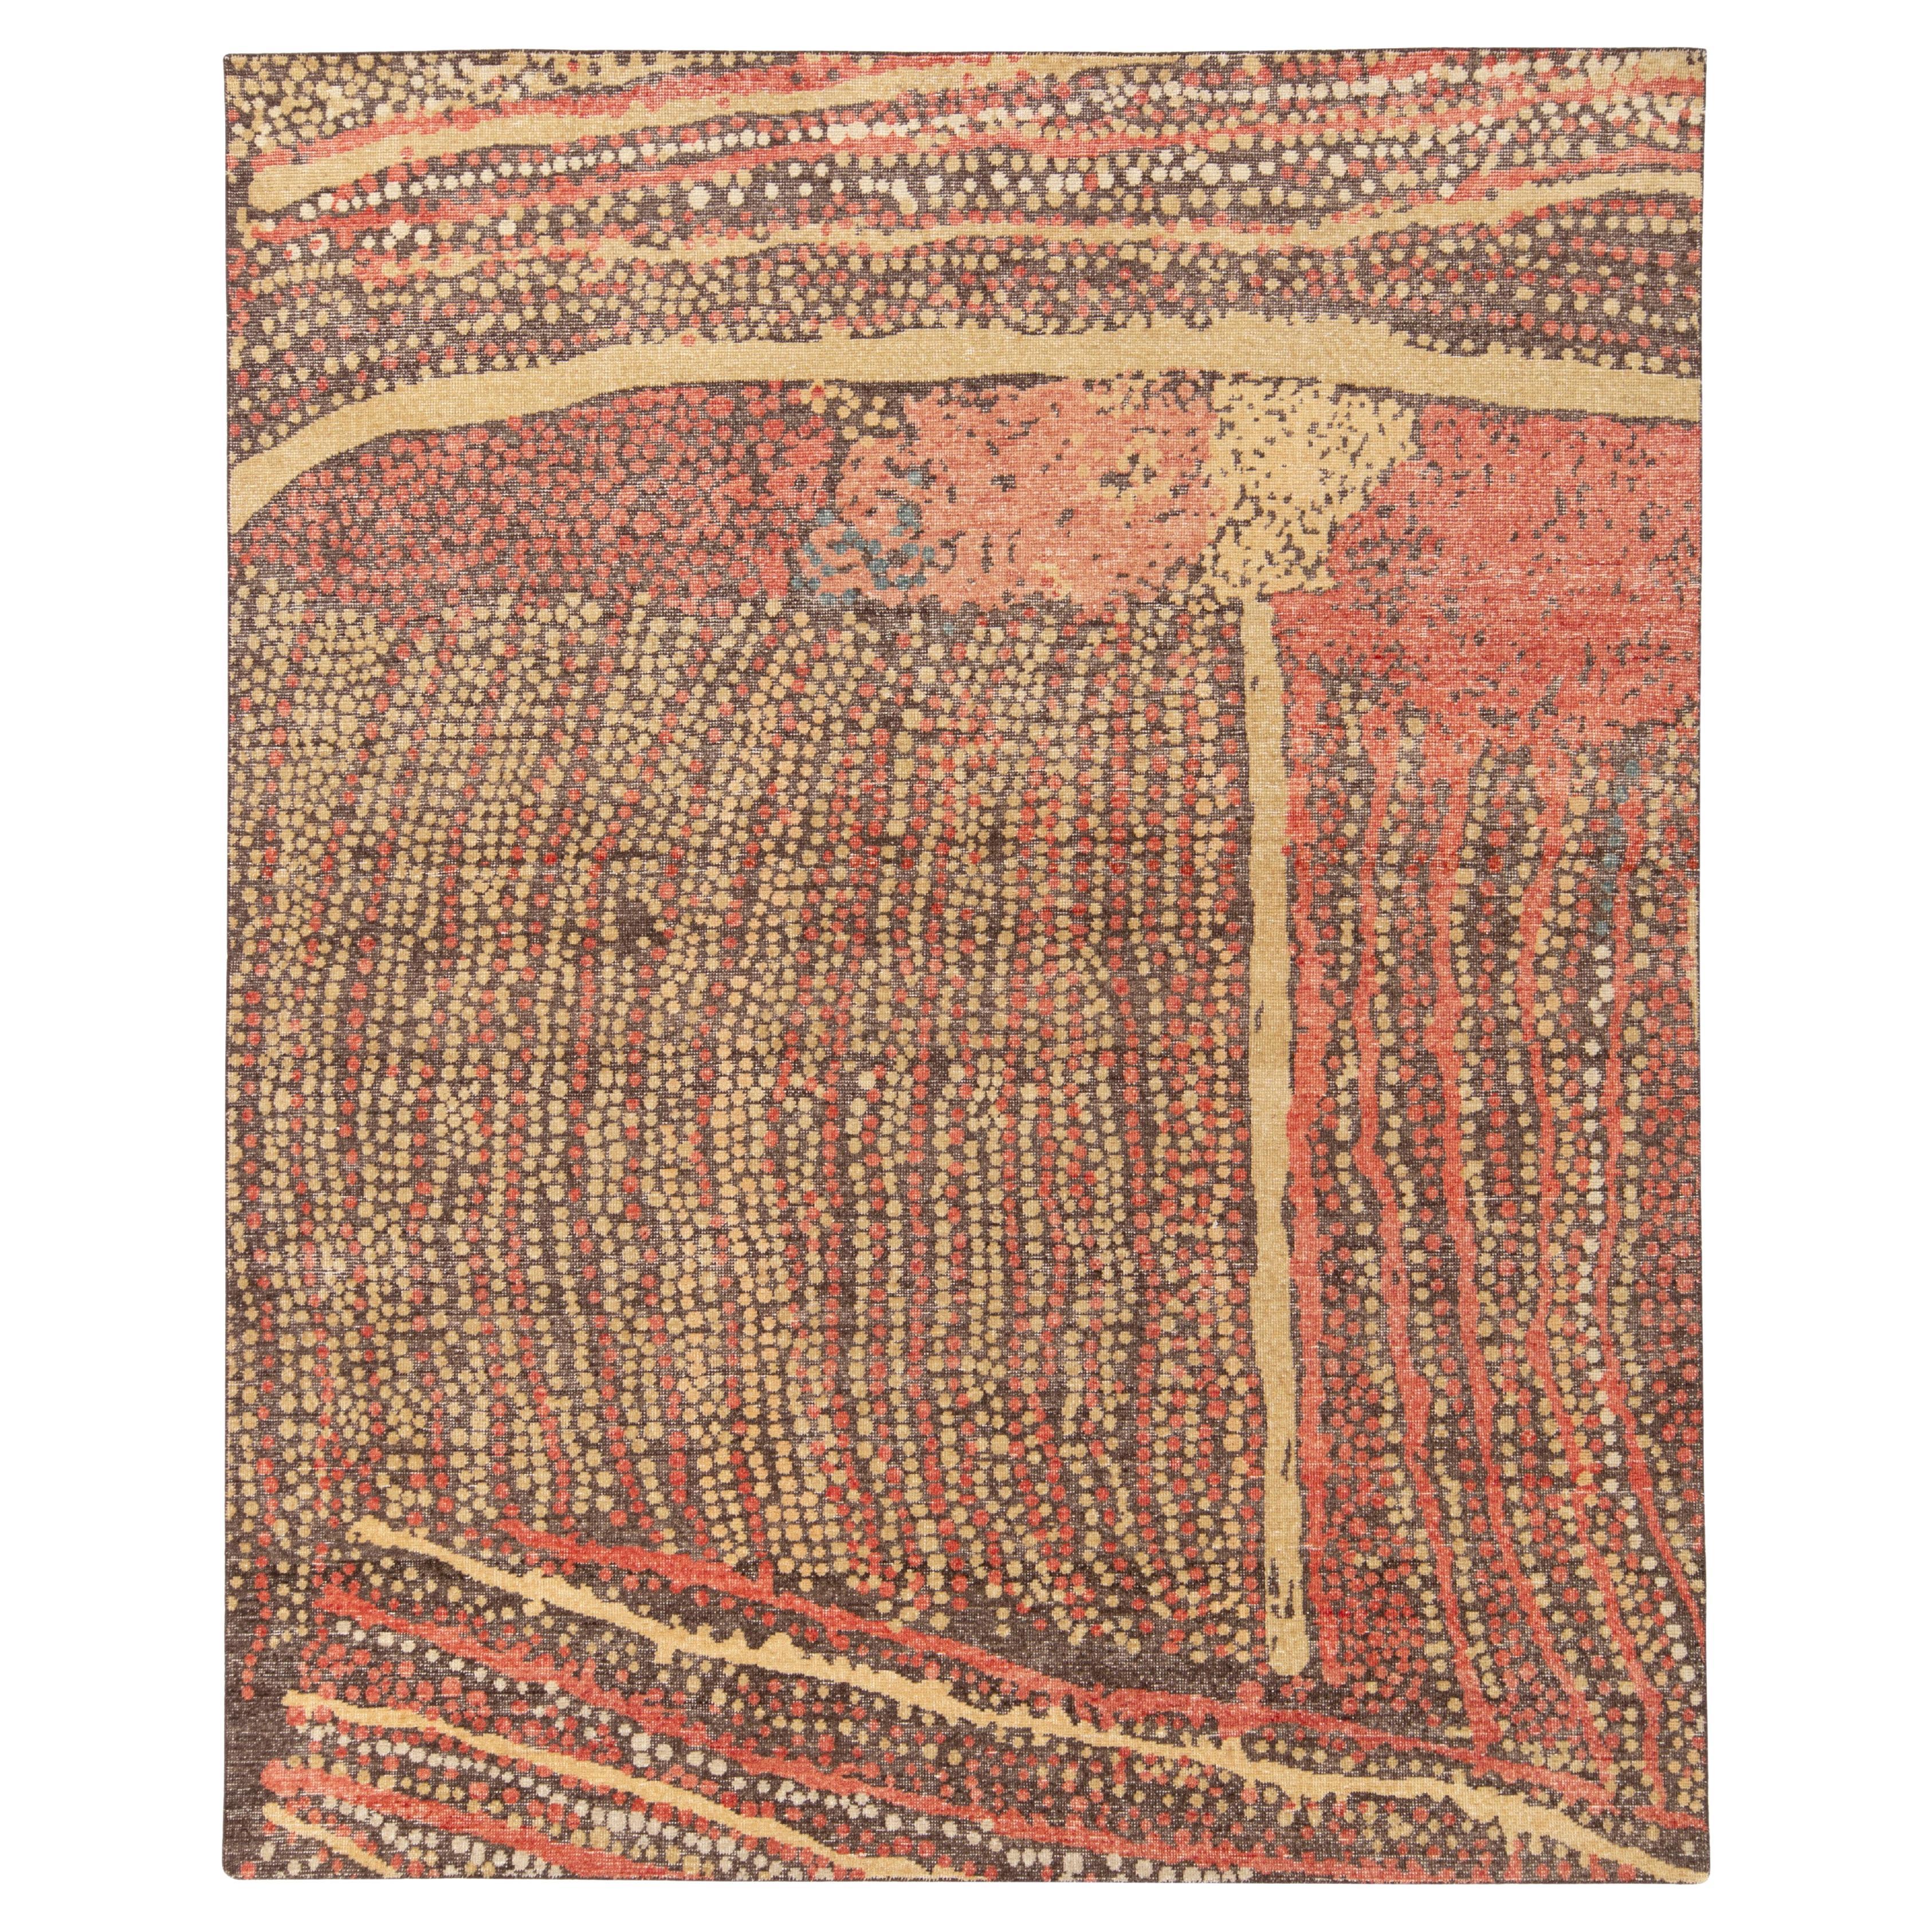 Moderner Teppich & Kelim-Teppich im Distressed-Stil in Beige-Braun, Rot mit abstraktem Muster